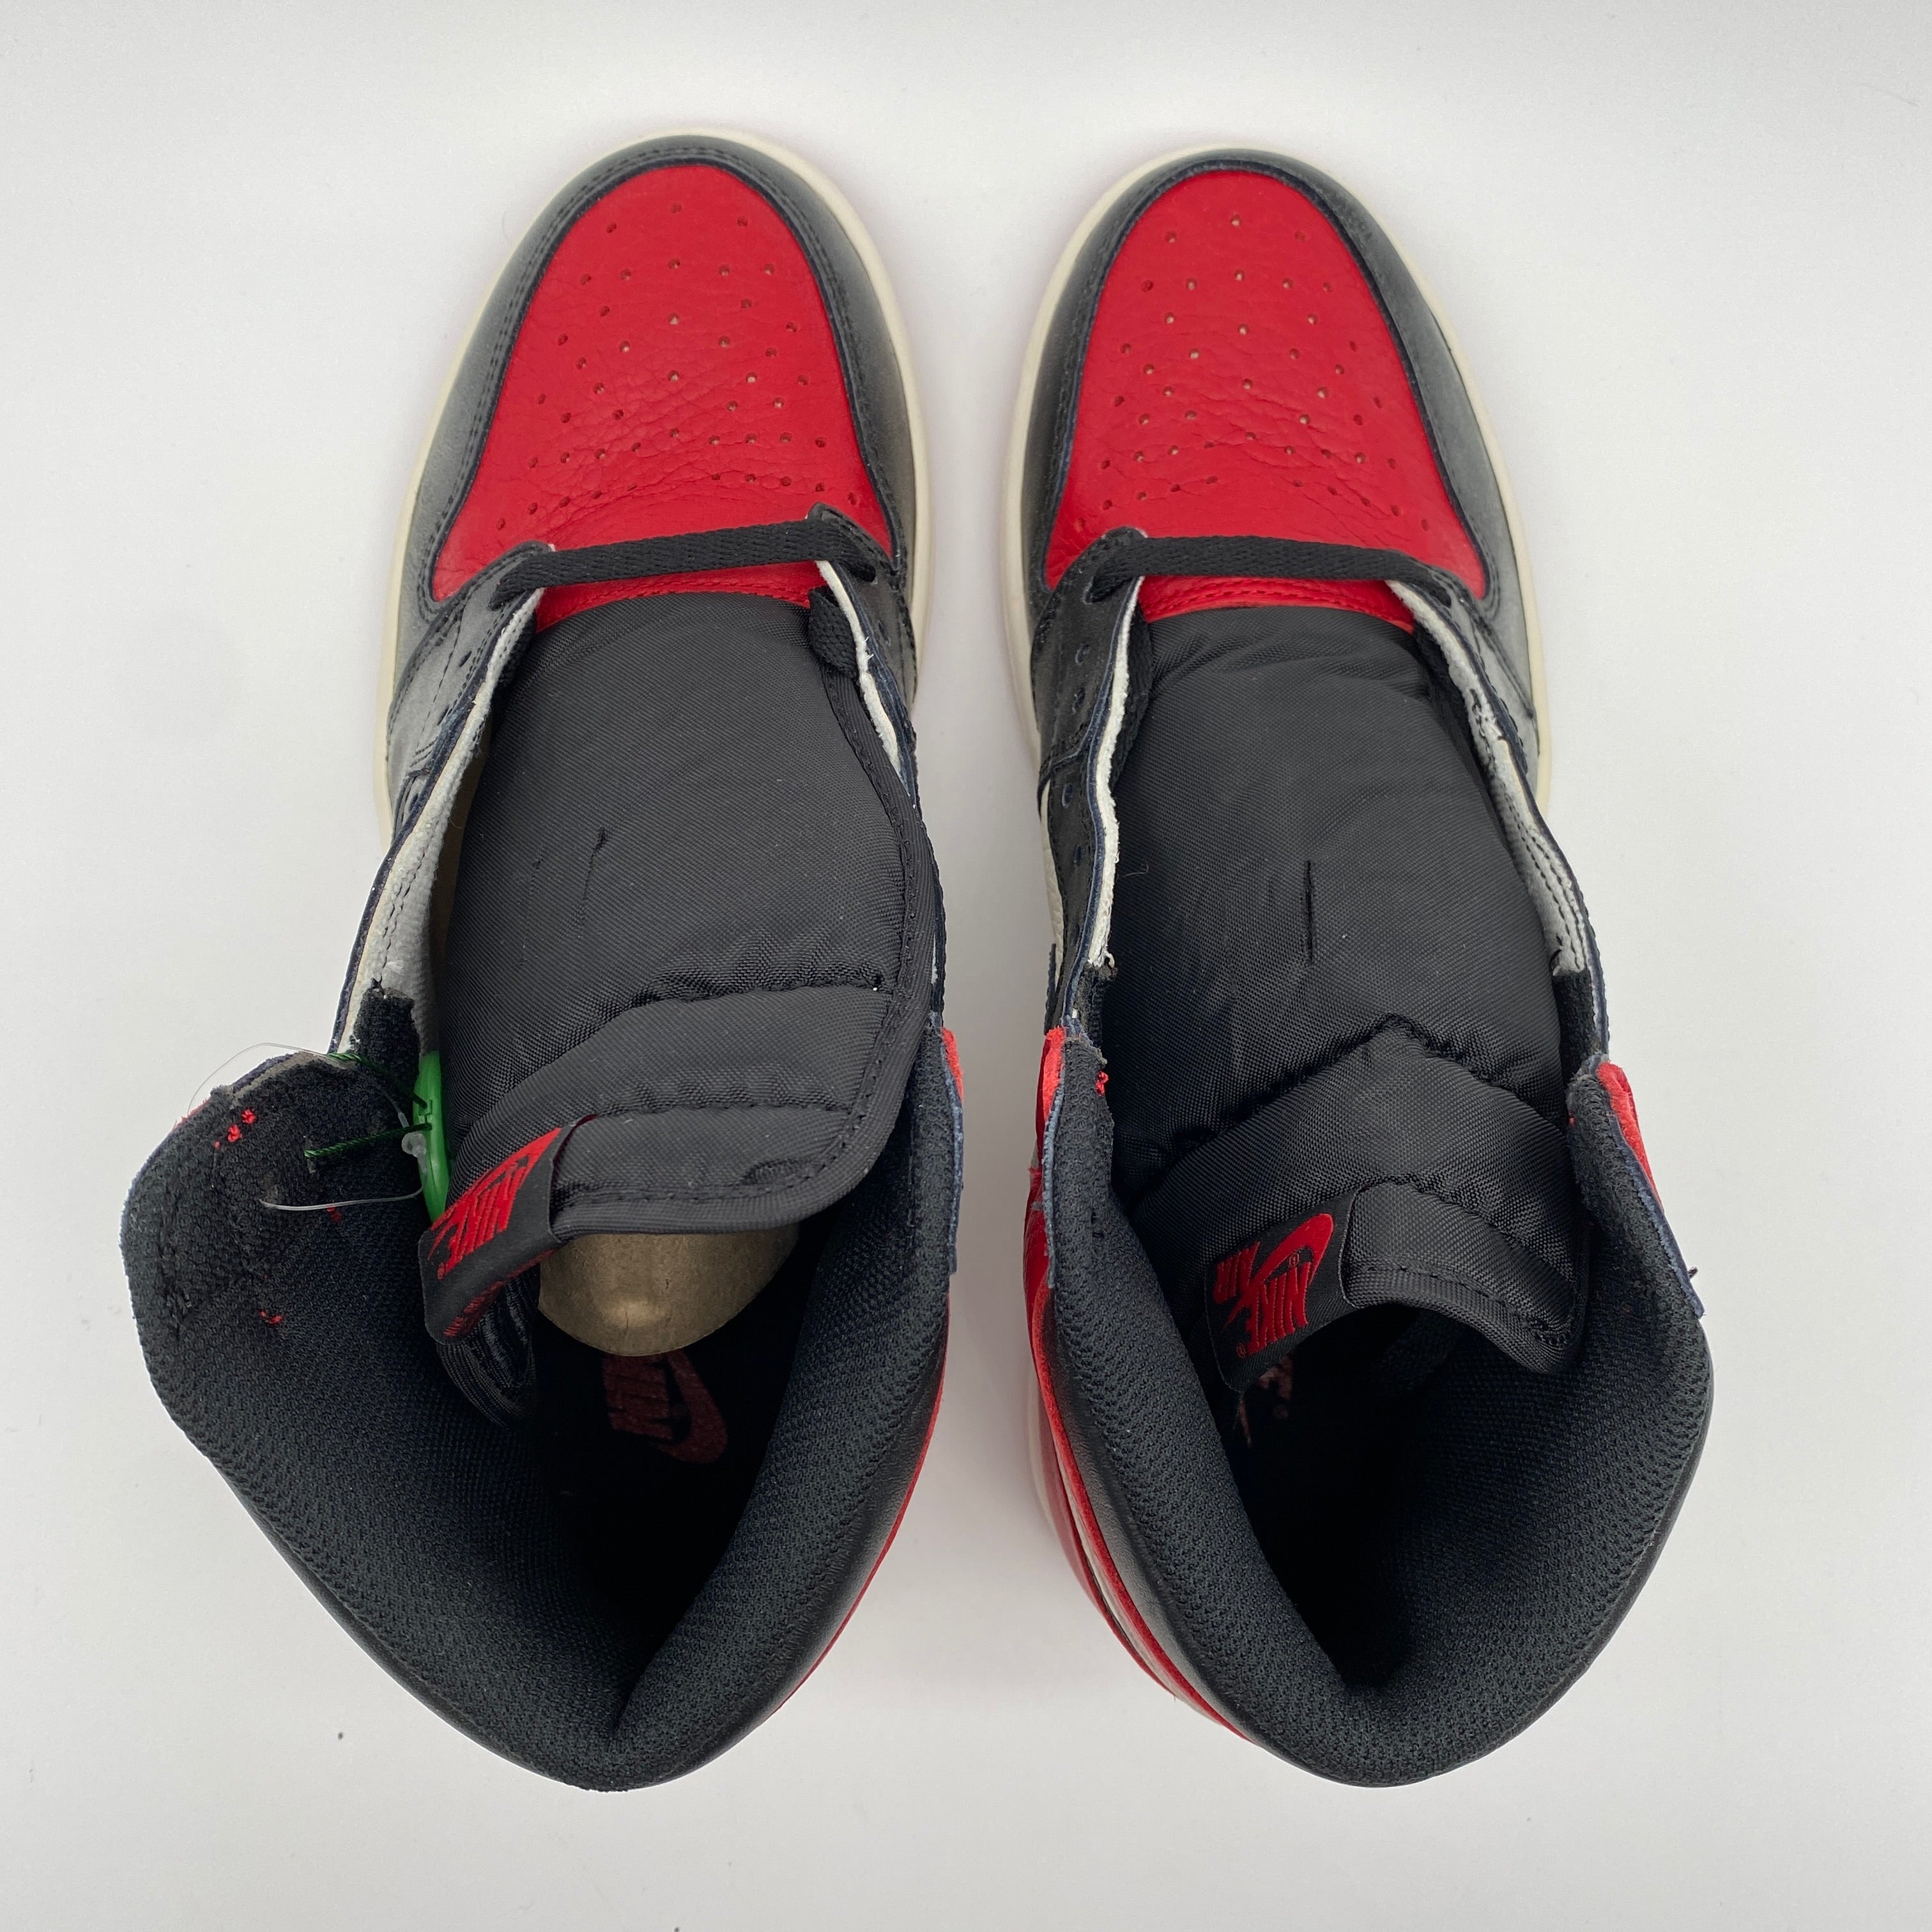 Air Jordan 1 Retro High OG "Bred Toe" 2018 New Size 9.5